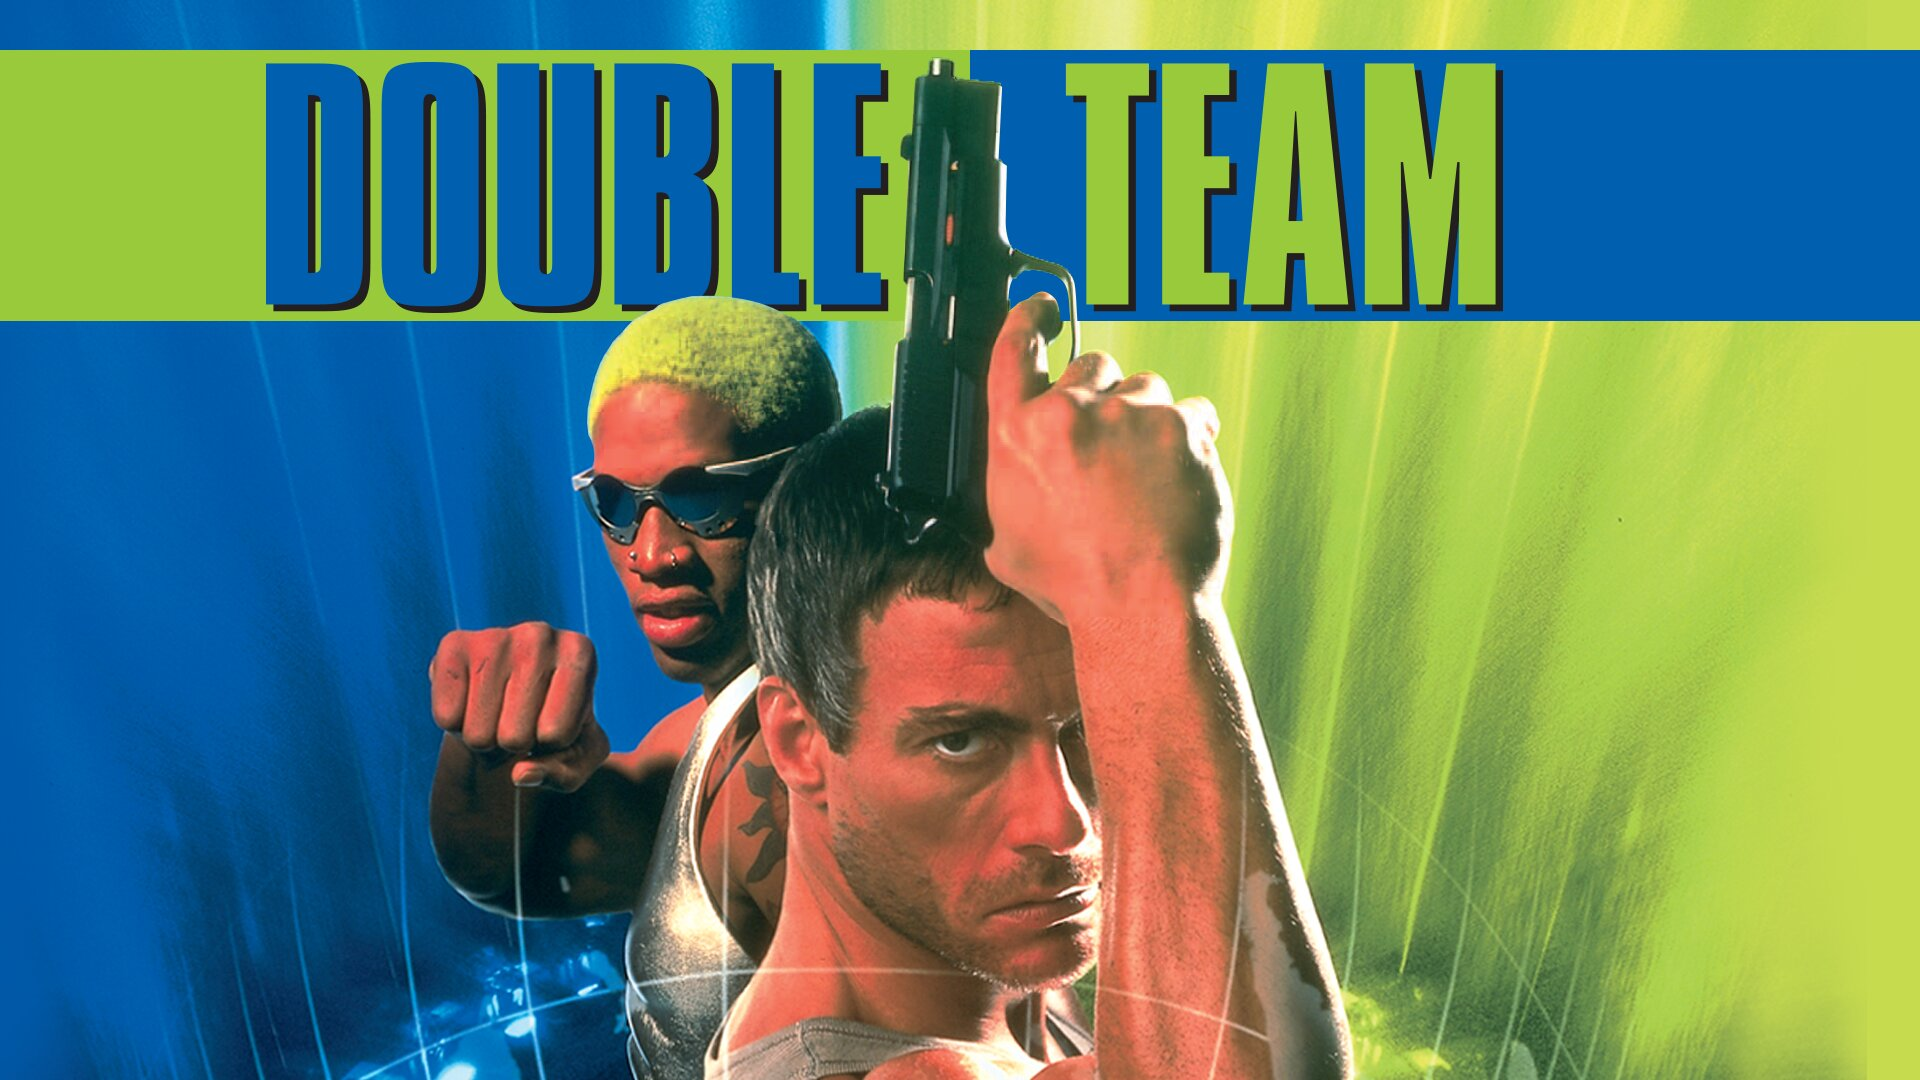 Double Team